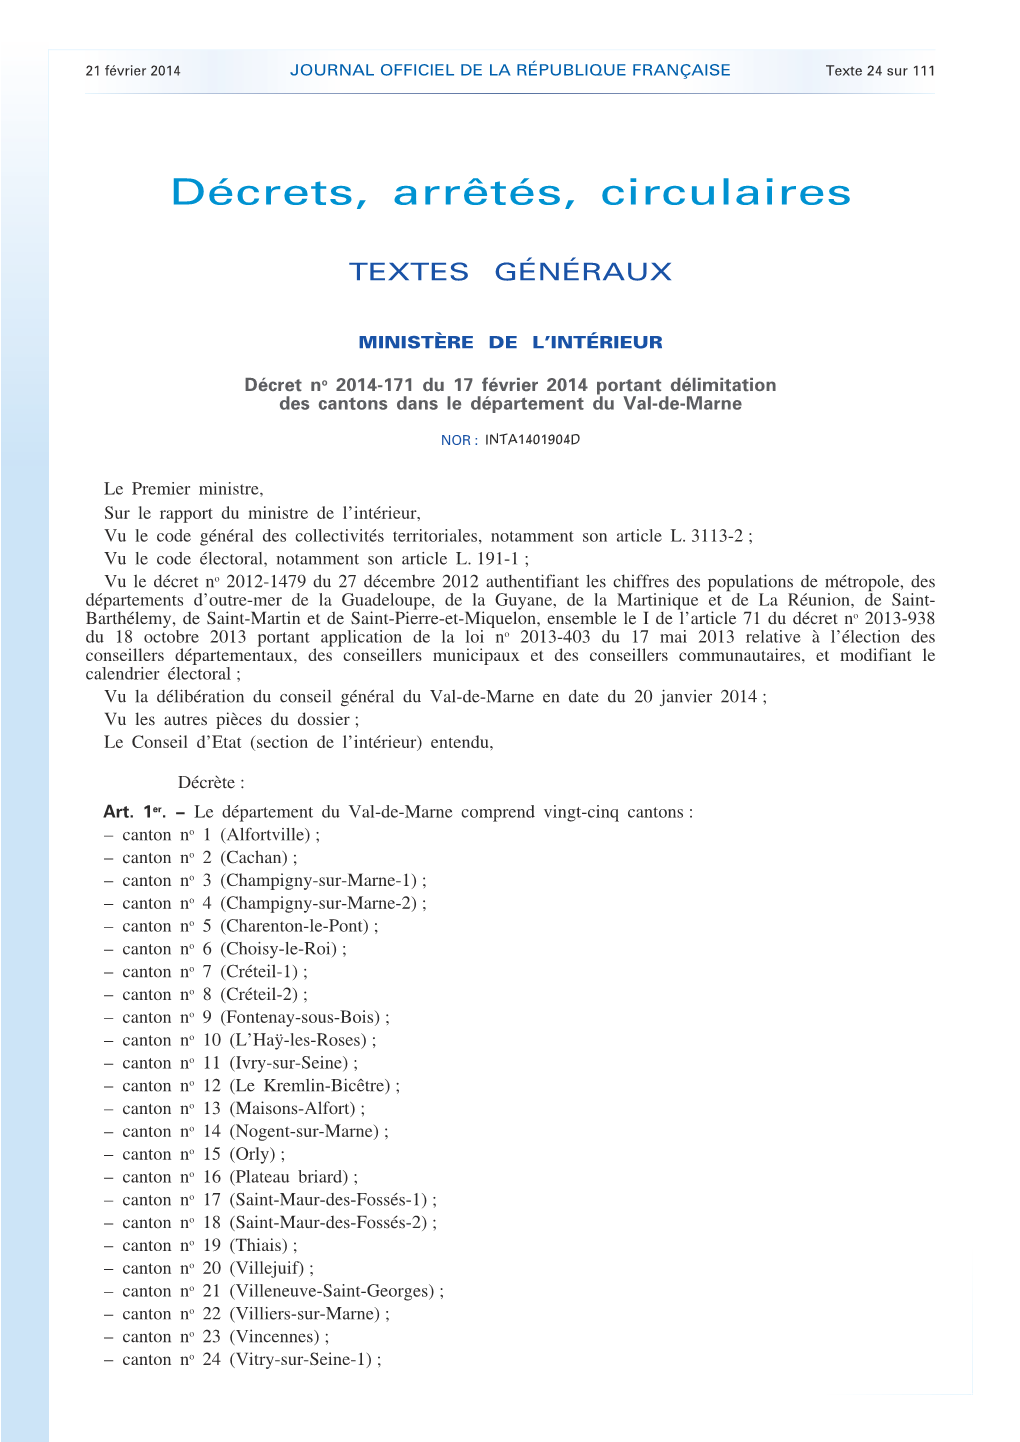 JOURNAL OFFICIEL DE LA RÉPUBLIQUE FRANÇAISE Texte 24 Sur 111